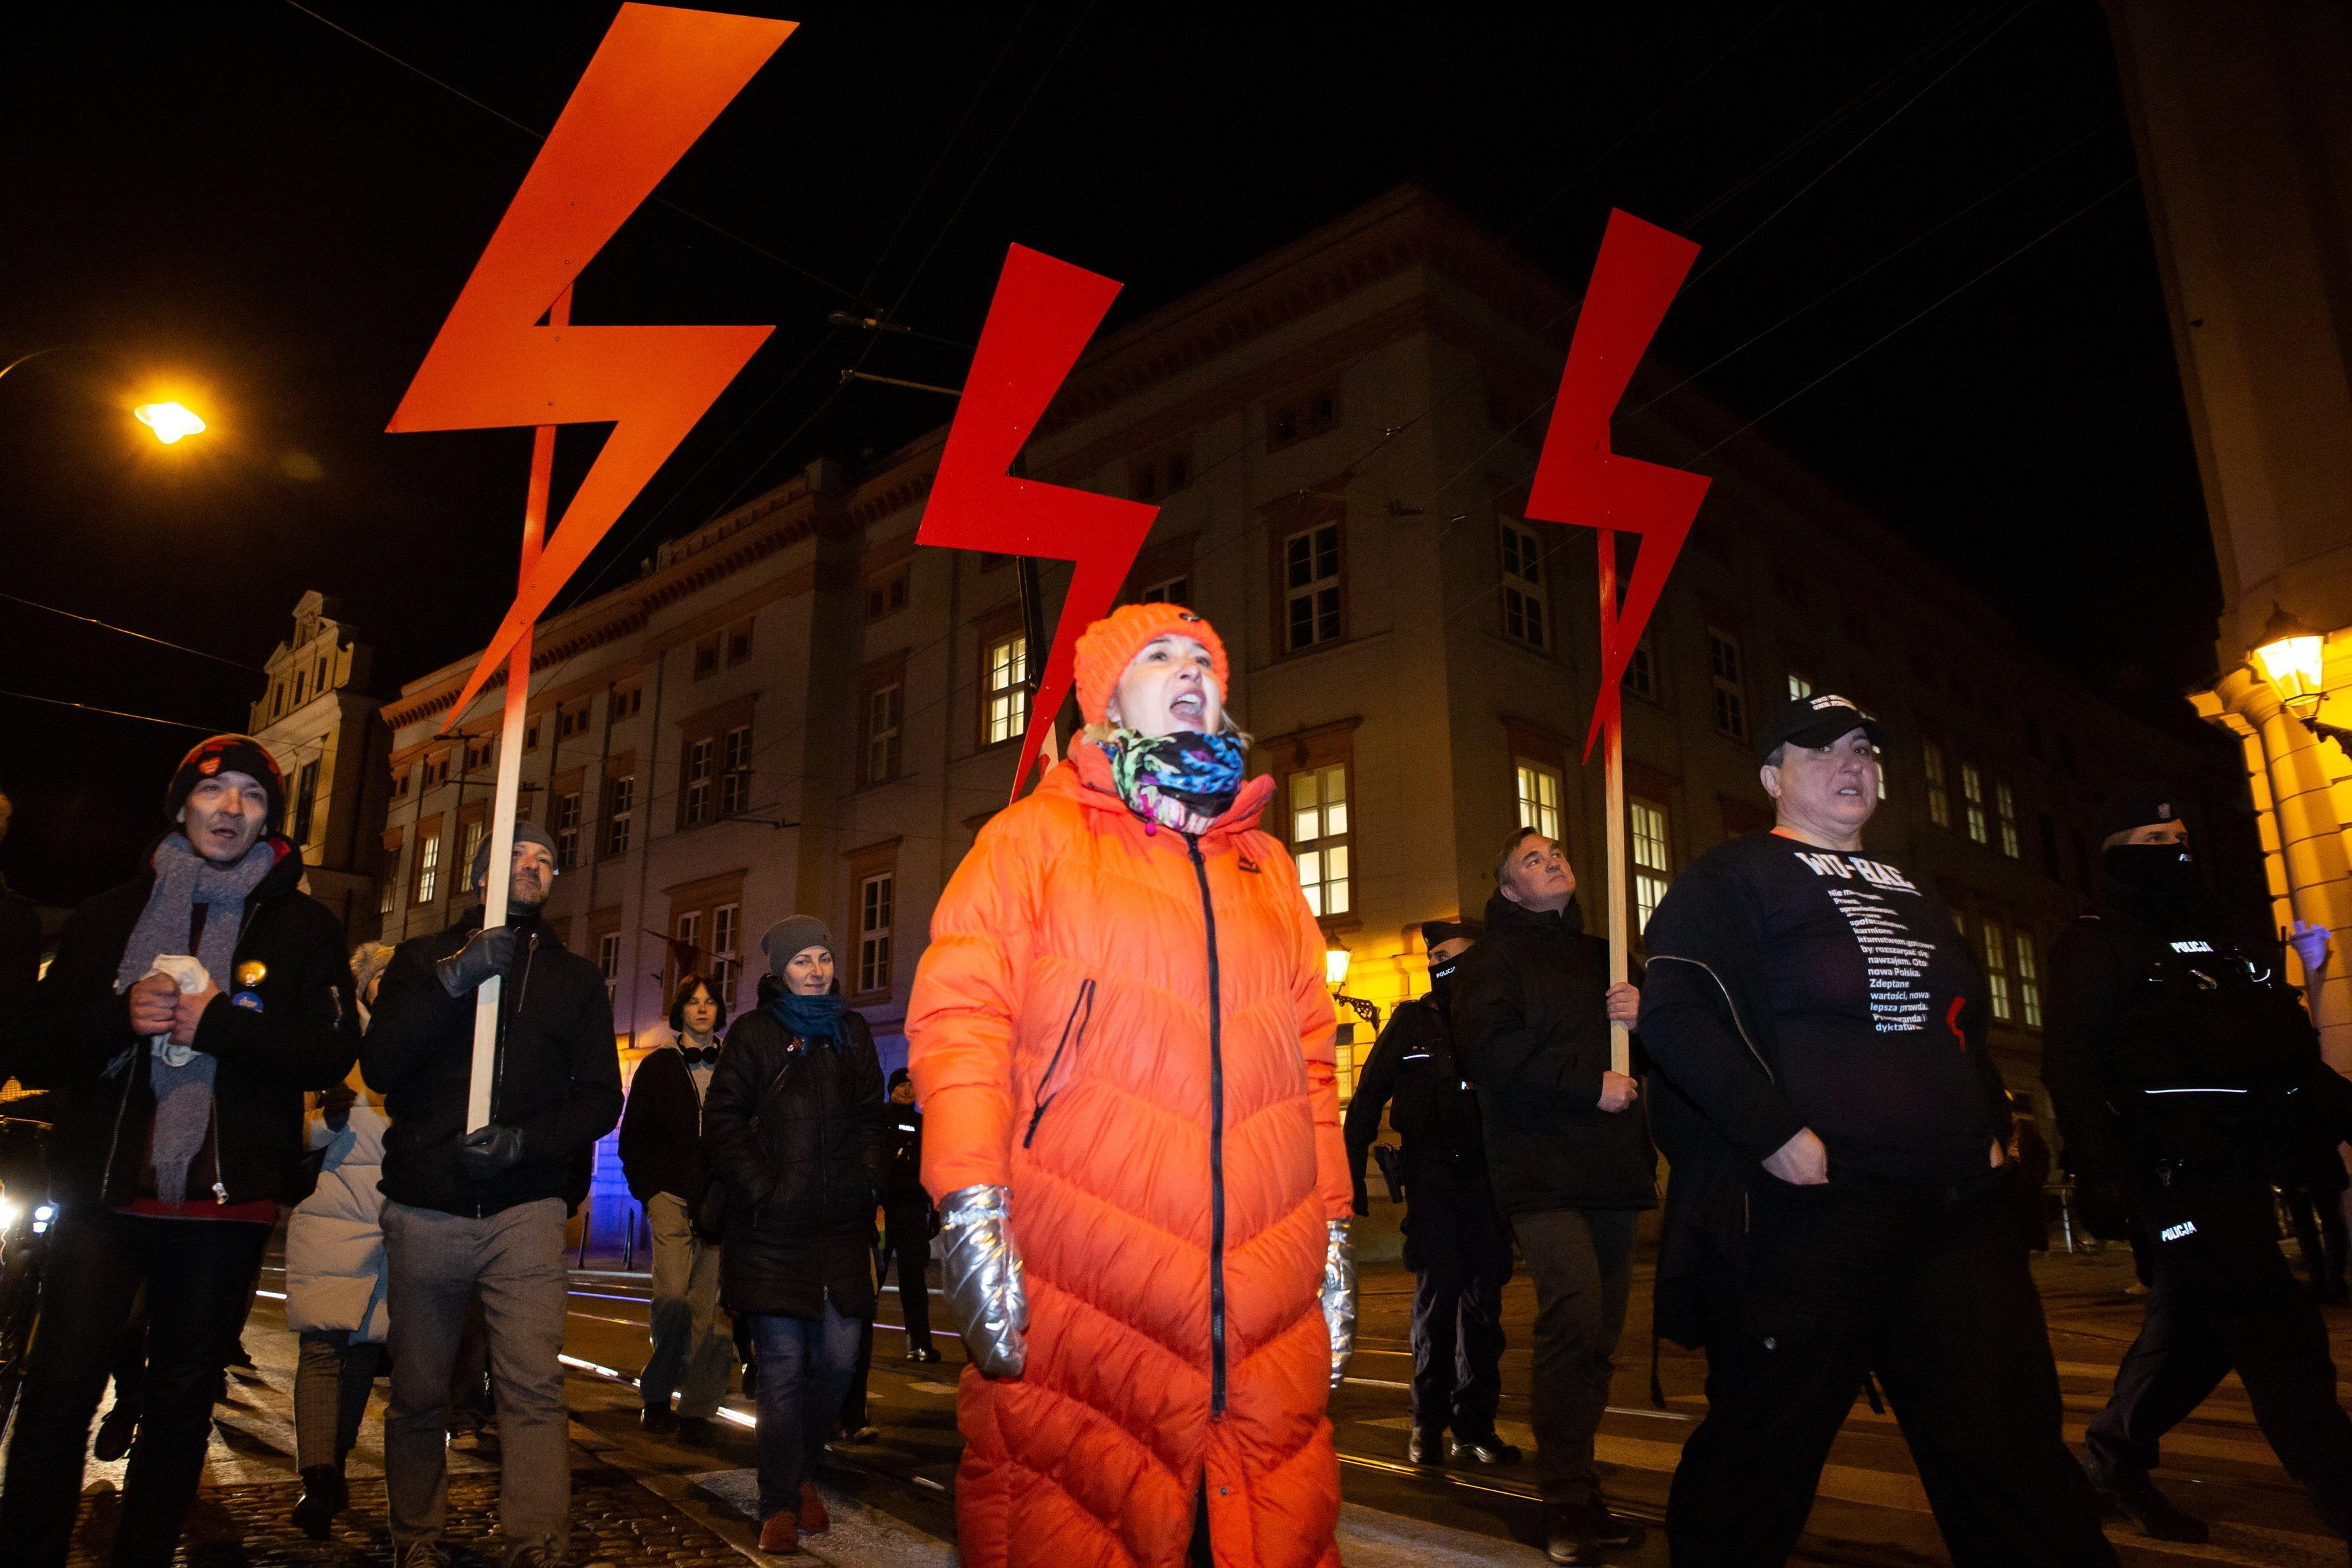 Kobieta w pomarańczowej kurtce stoi na ulicy, nad nią błyskawice jako symbol Strajku Kobiet